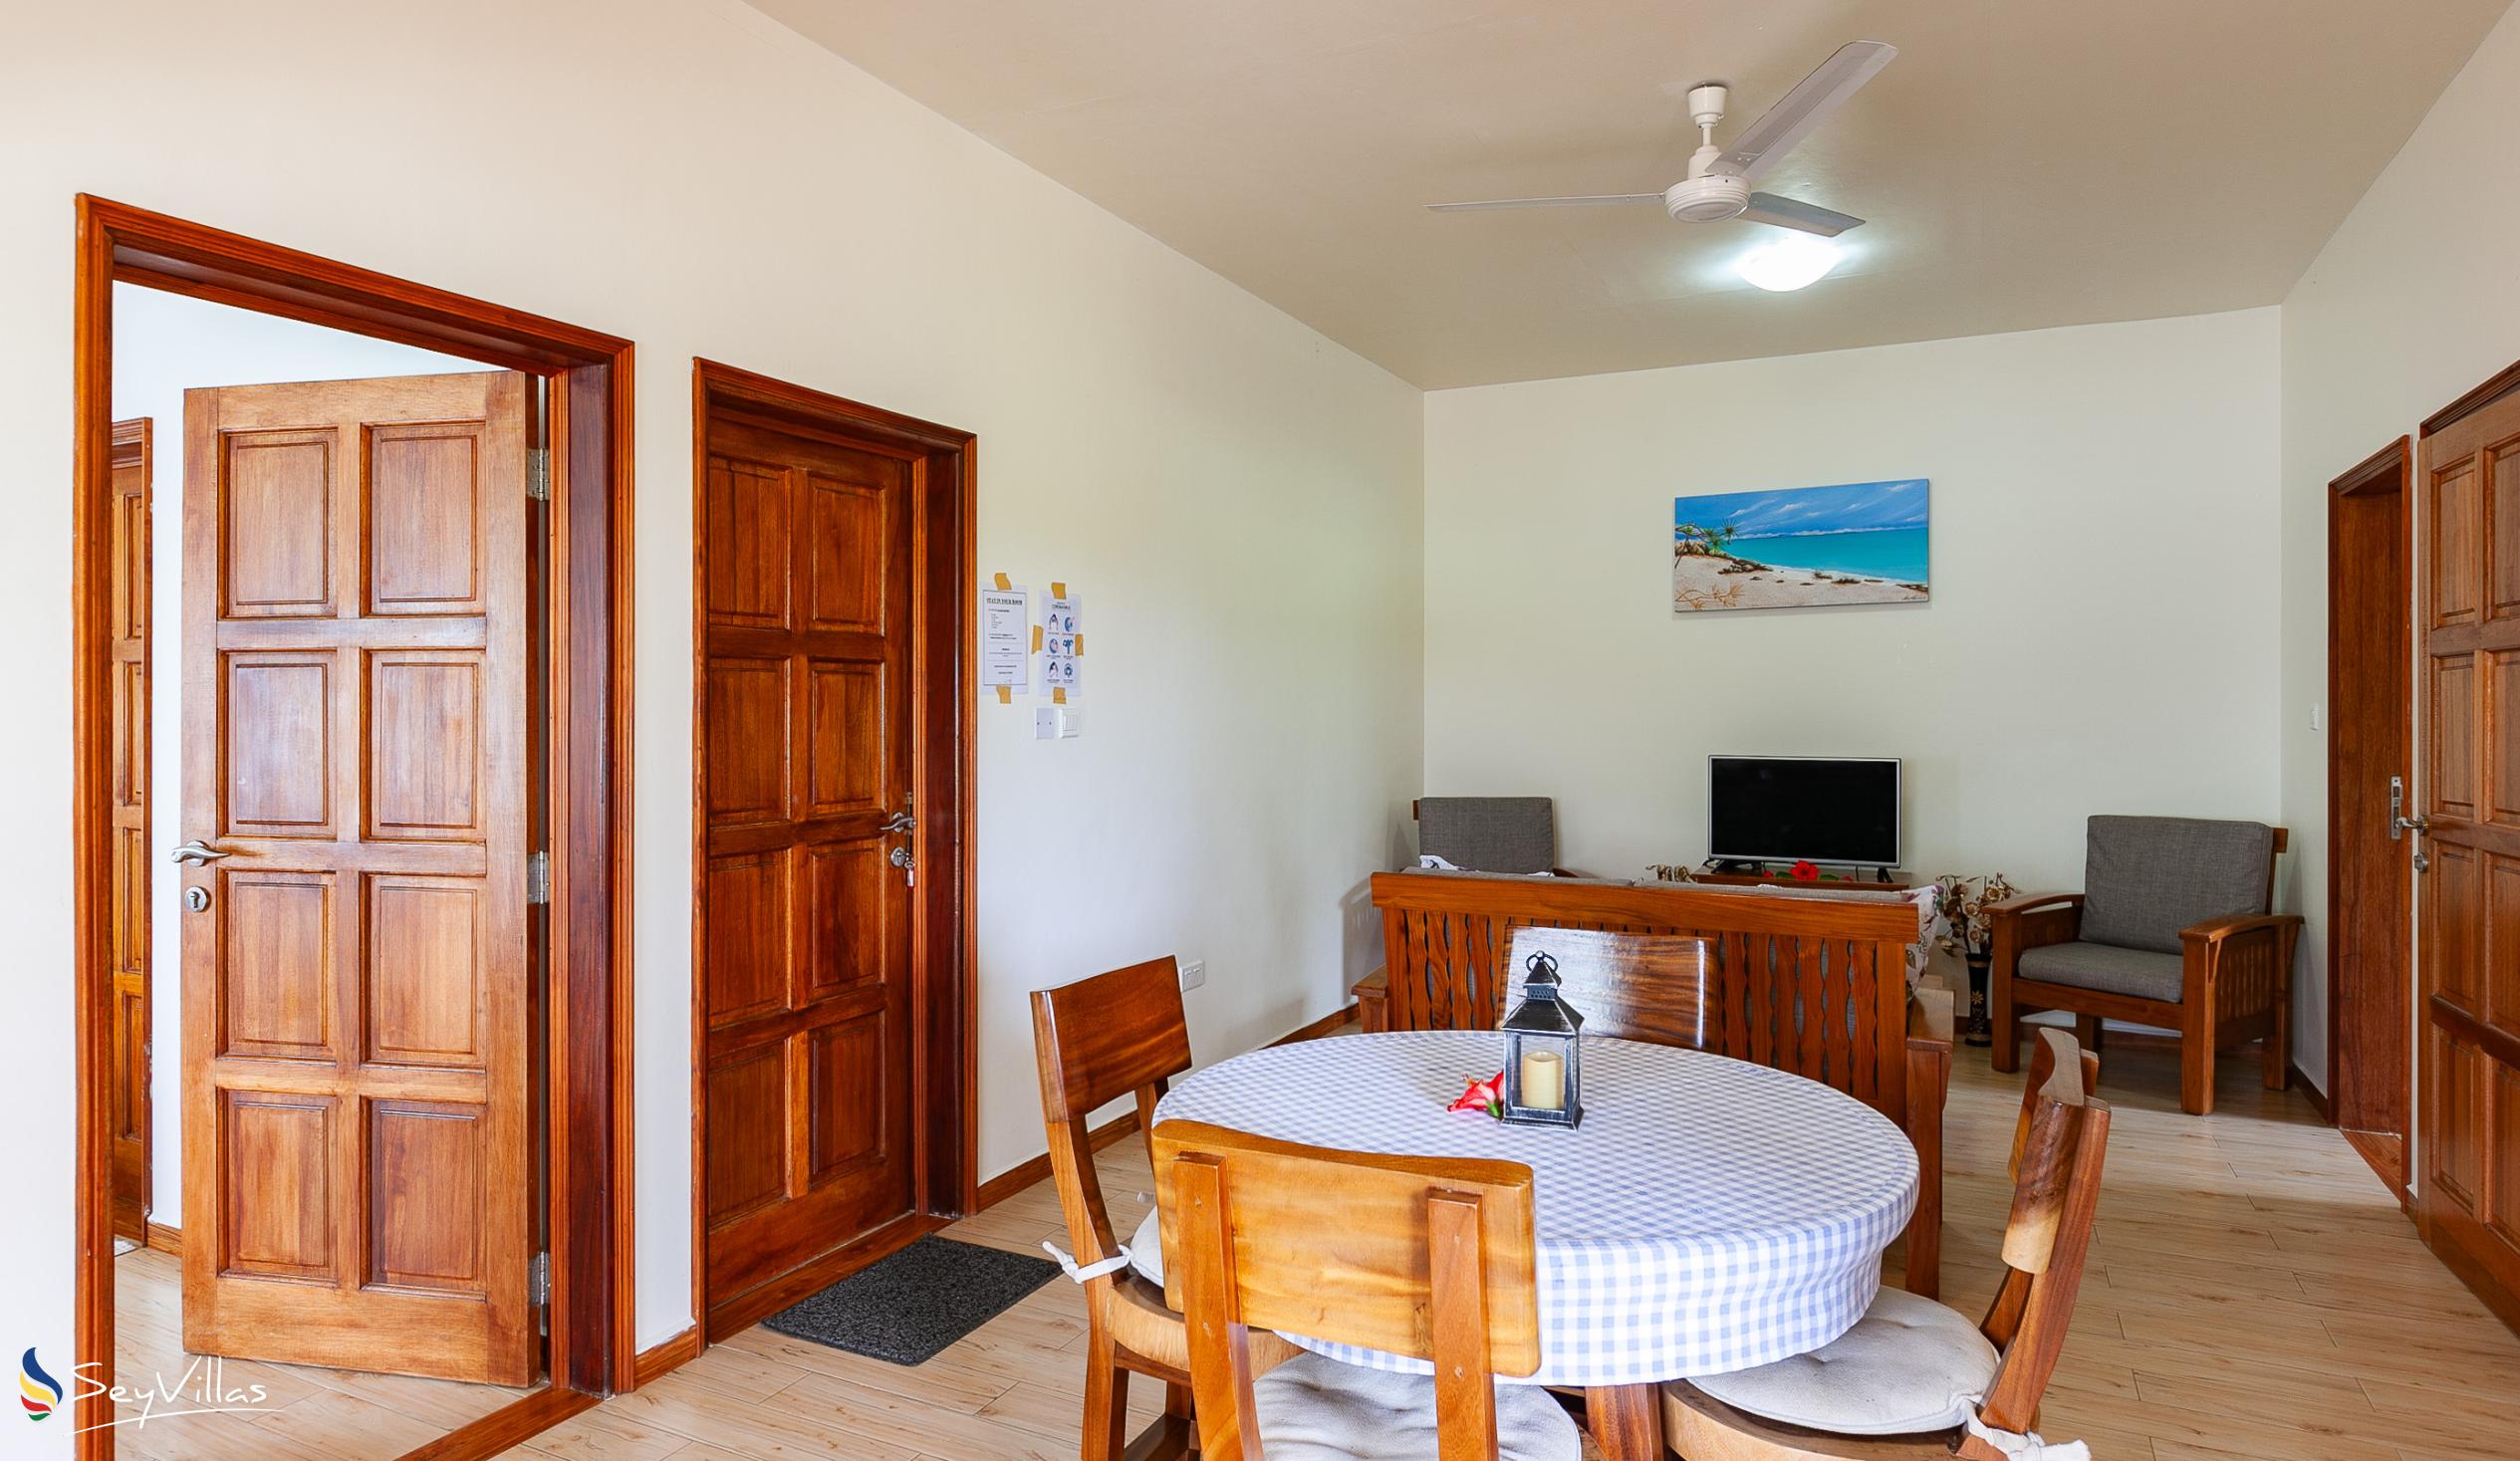 Foto 63: Seashell Beach Villa - Appartamento con 2 camere - Praslin (Seychelles)